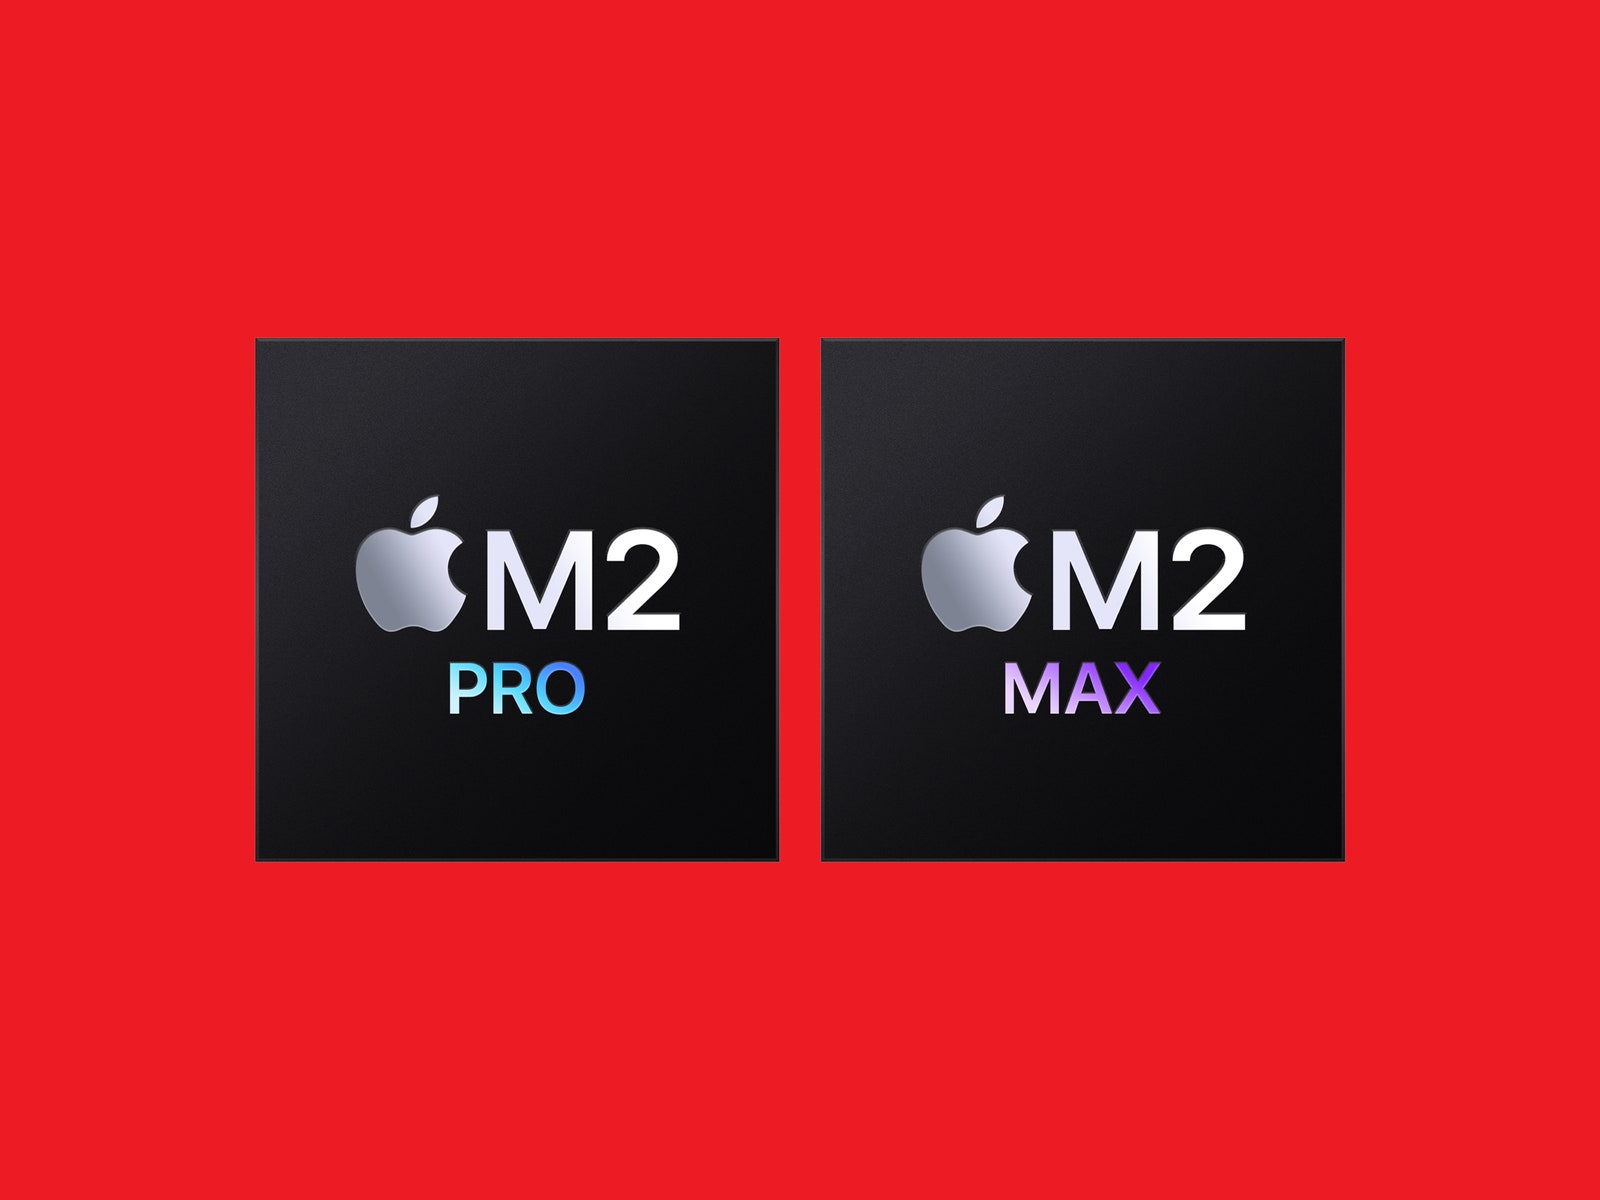 Чипы Apple M2 Pro и M2 Max на красном фоне